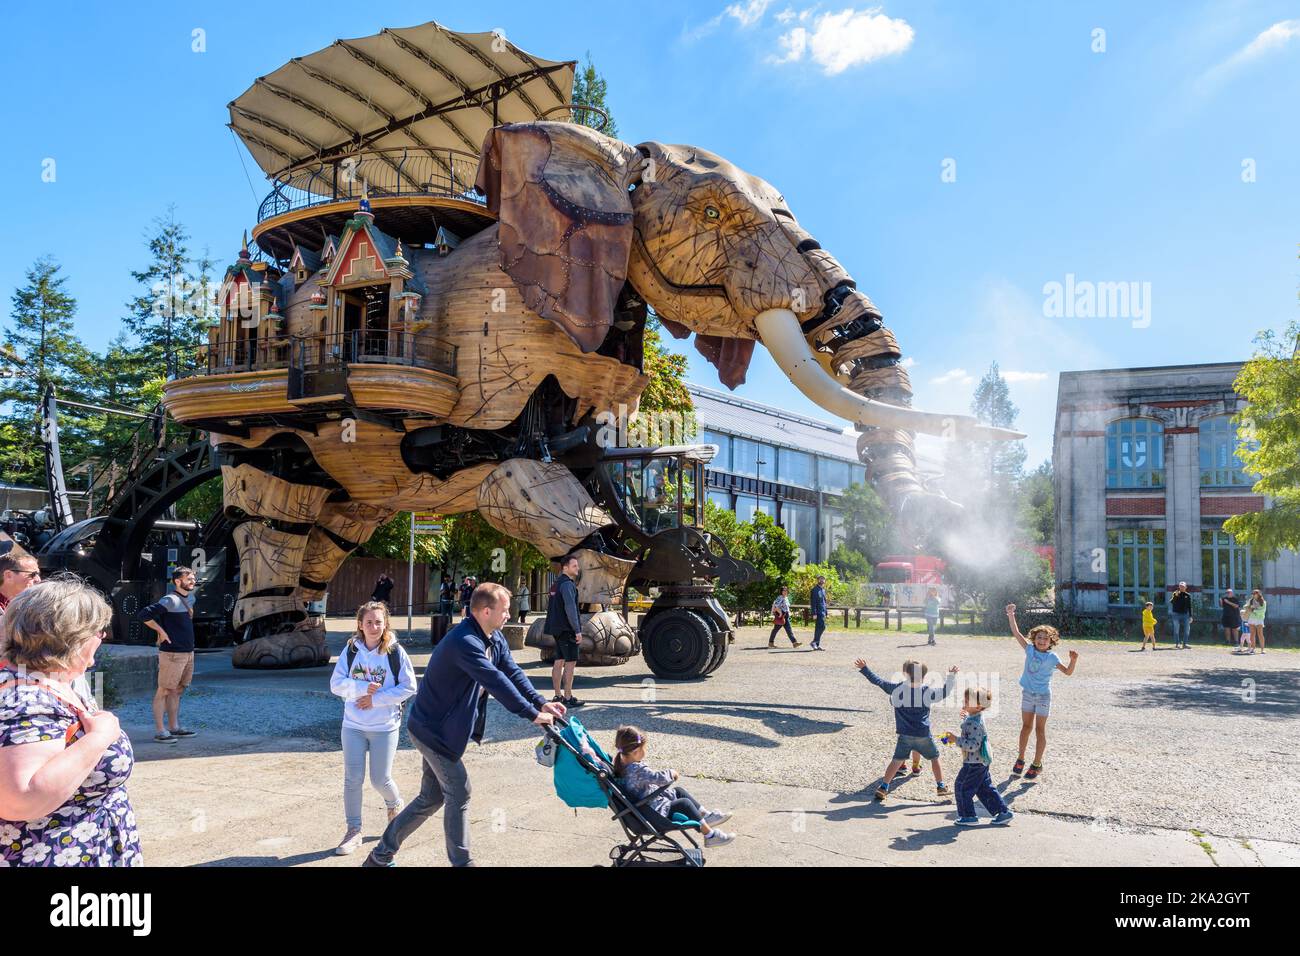 La marionnette géante du Grand Eléphant, qui fait partie des machines de l'attraction touristique de l'île de Nantes, pulvérise de l'eau avec son tronc sur les enfants excités. Banque D'Images